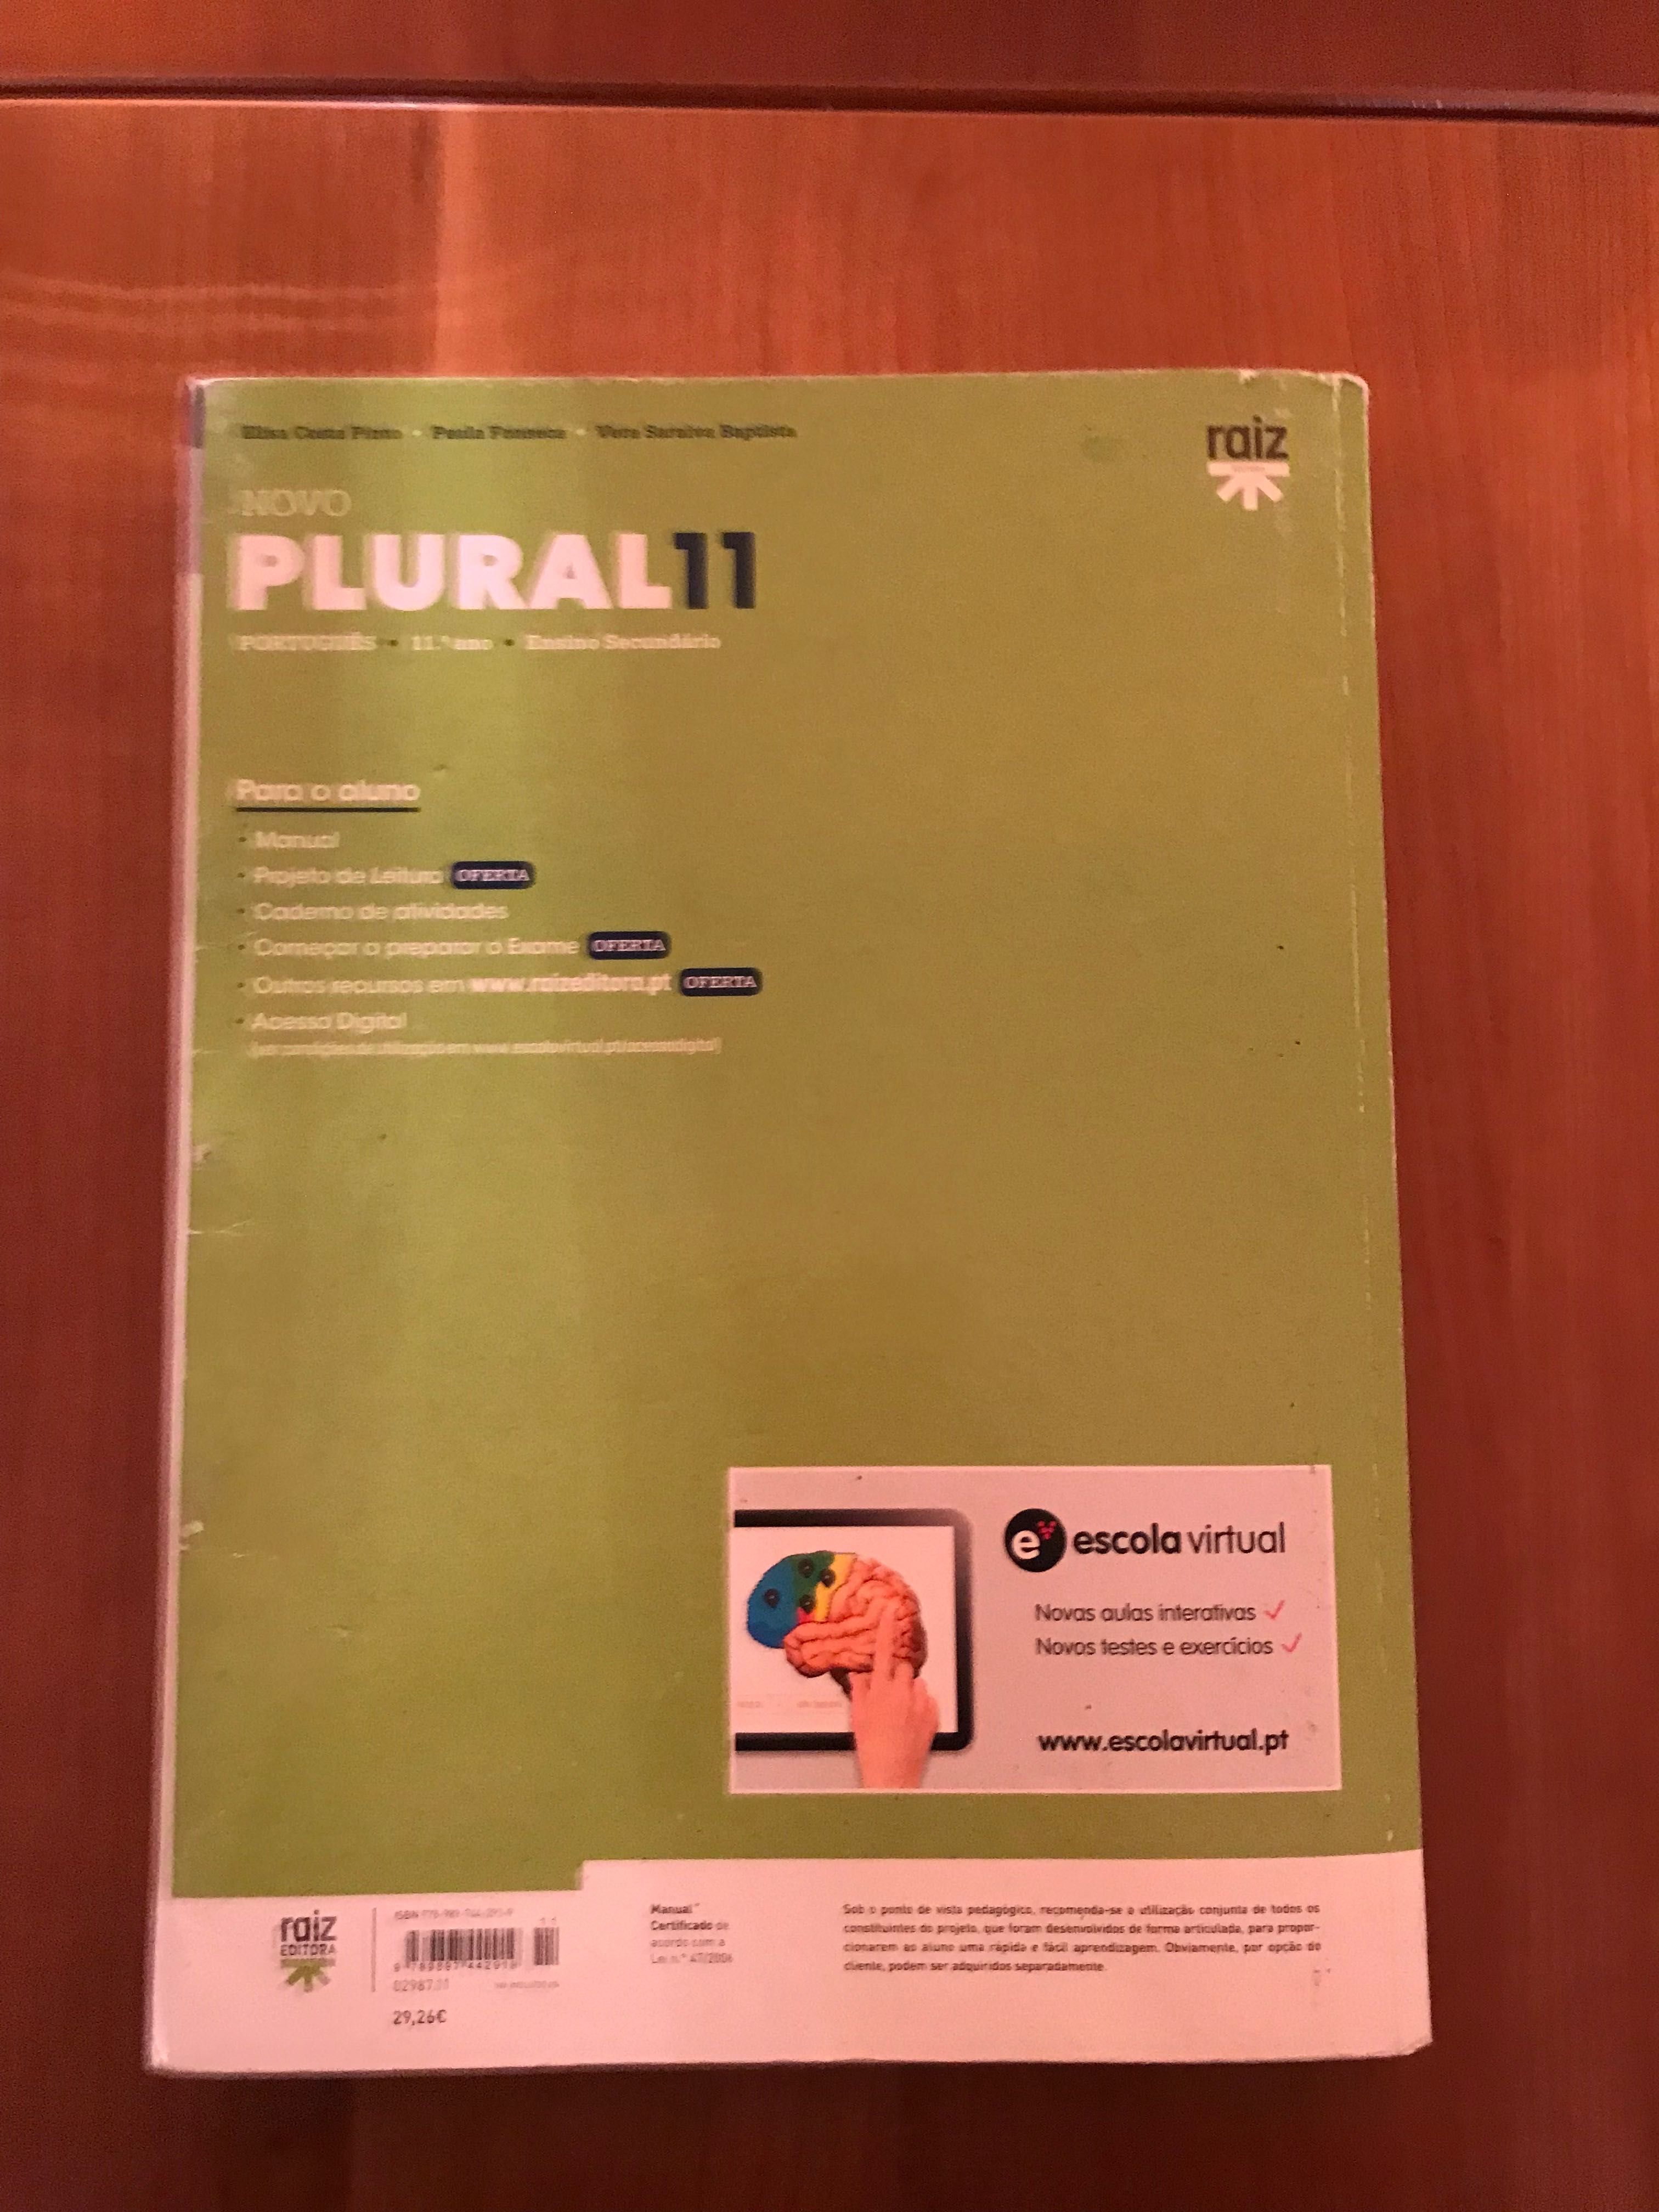 Novo Plural 11 - Português (manual + caderno atividades)